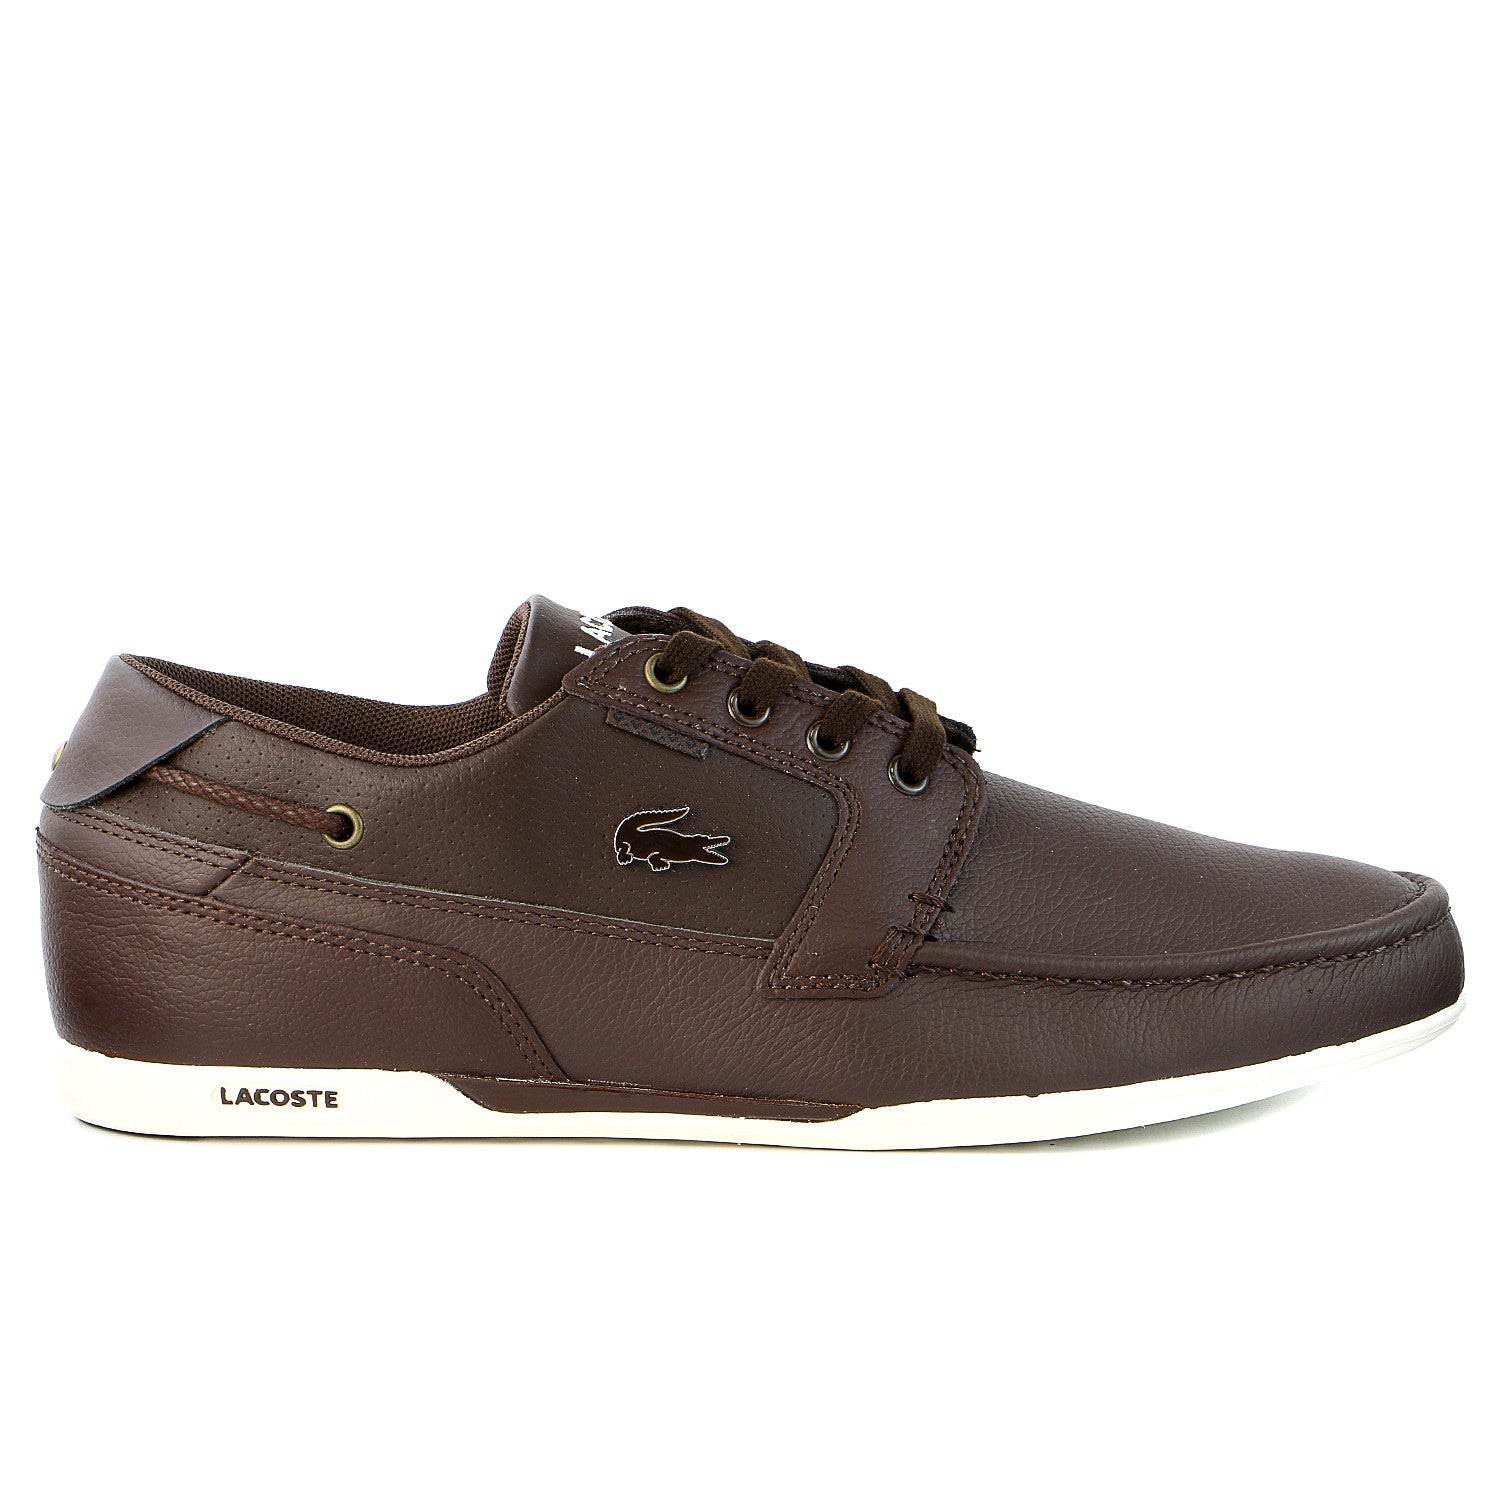 Lacoste Dreyfus US SPM Boat Sneaker Shoe - Brown/Dark - Shoplifestyle